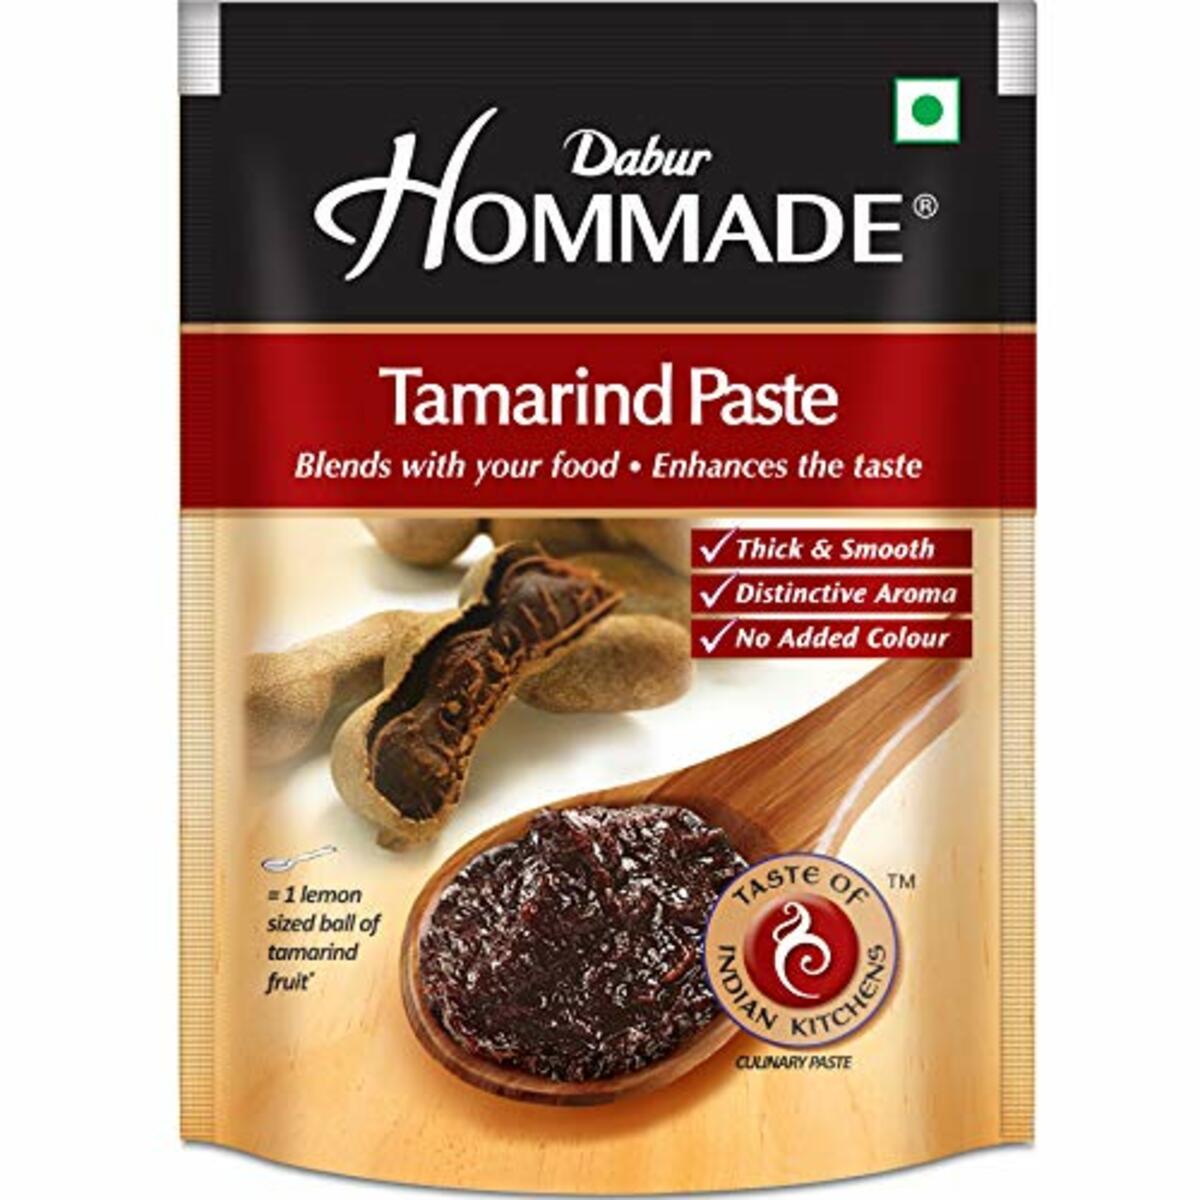 Hommade Tamarind Paste 200g